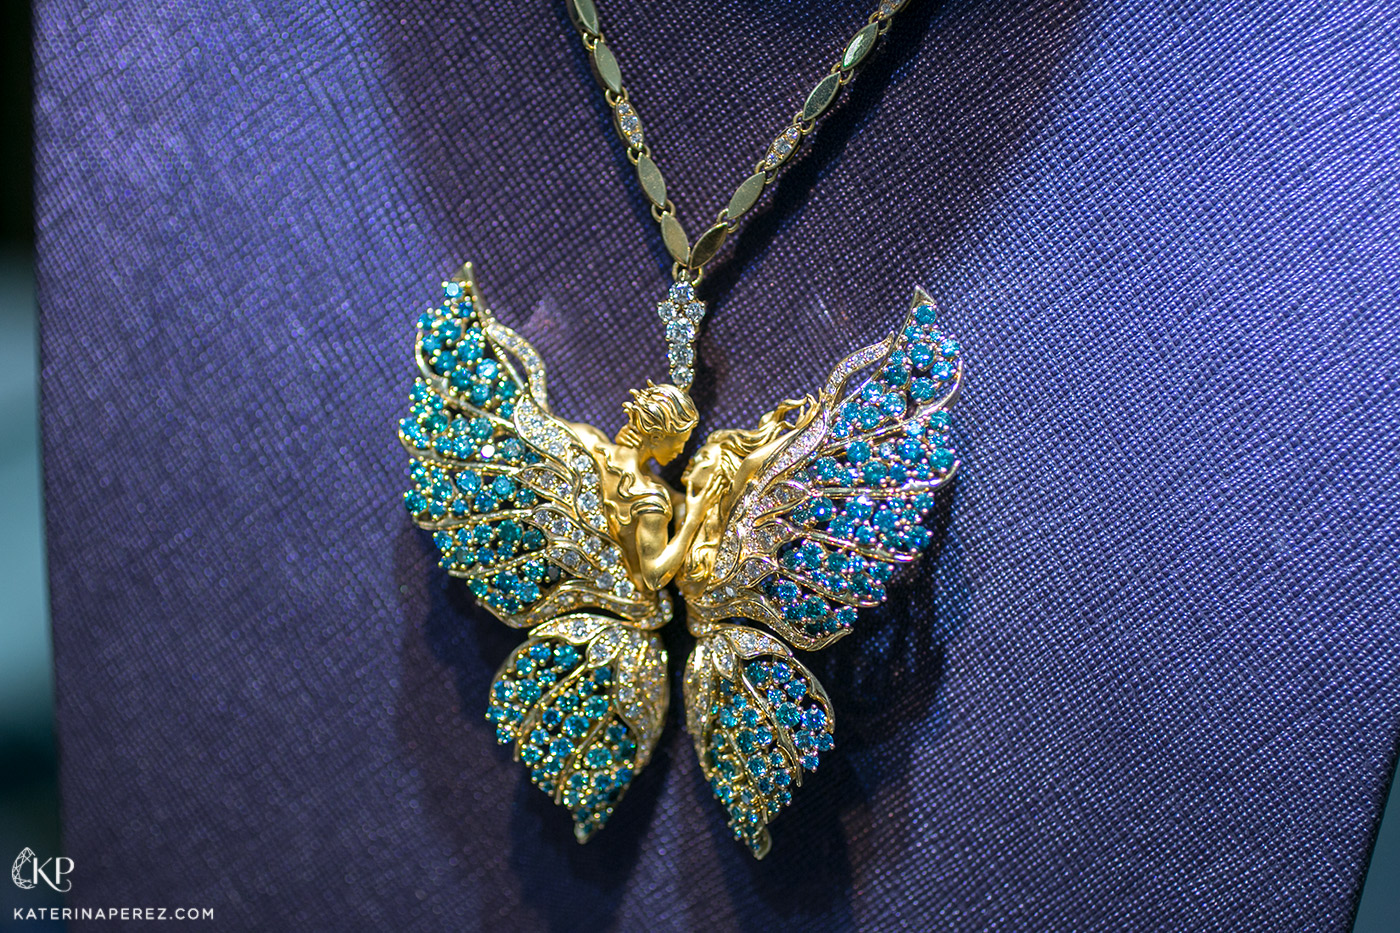 Колье Magerit ‘Butterflies in Love’ из 18k желтого золота из коллекции ‘Eternity’ с голубыми и бесцветными бриллиантами